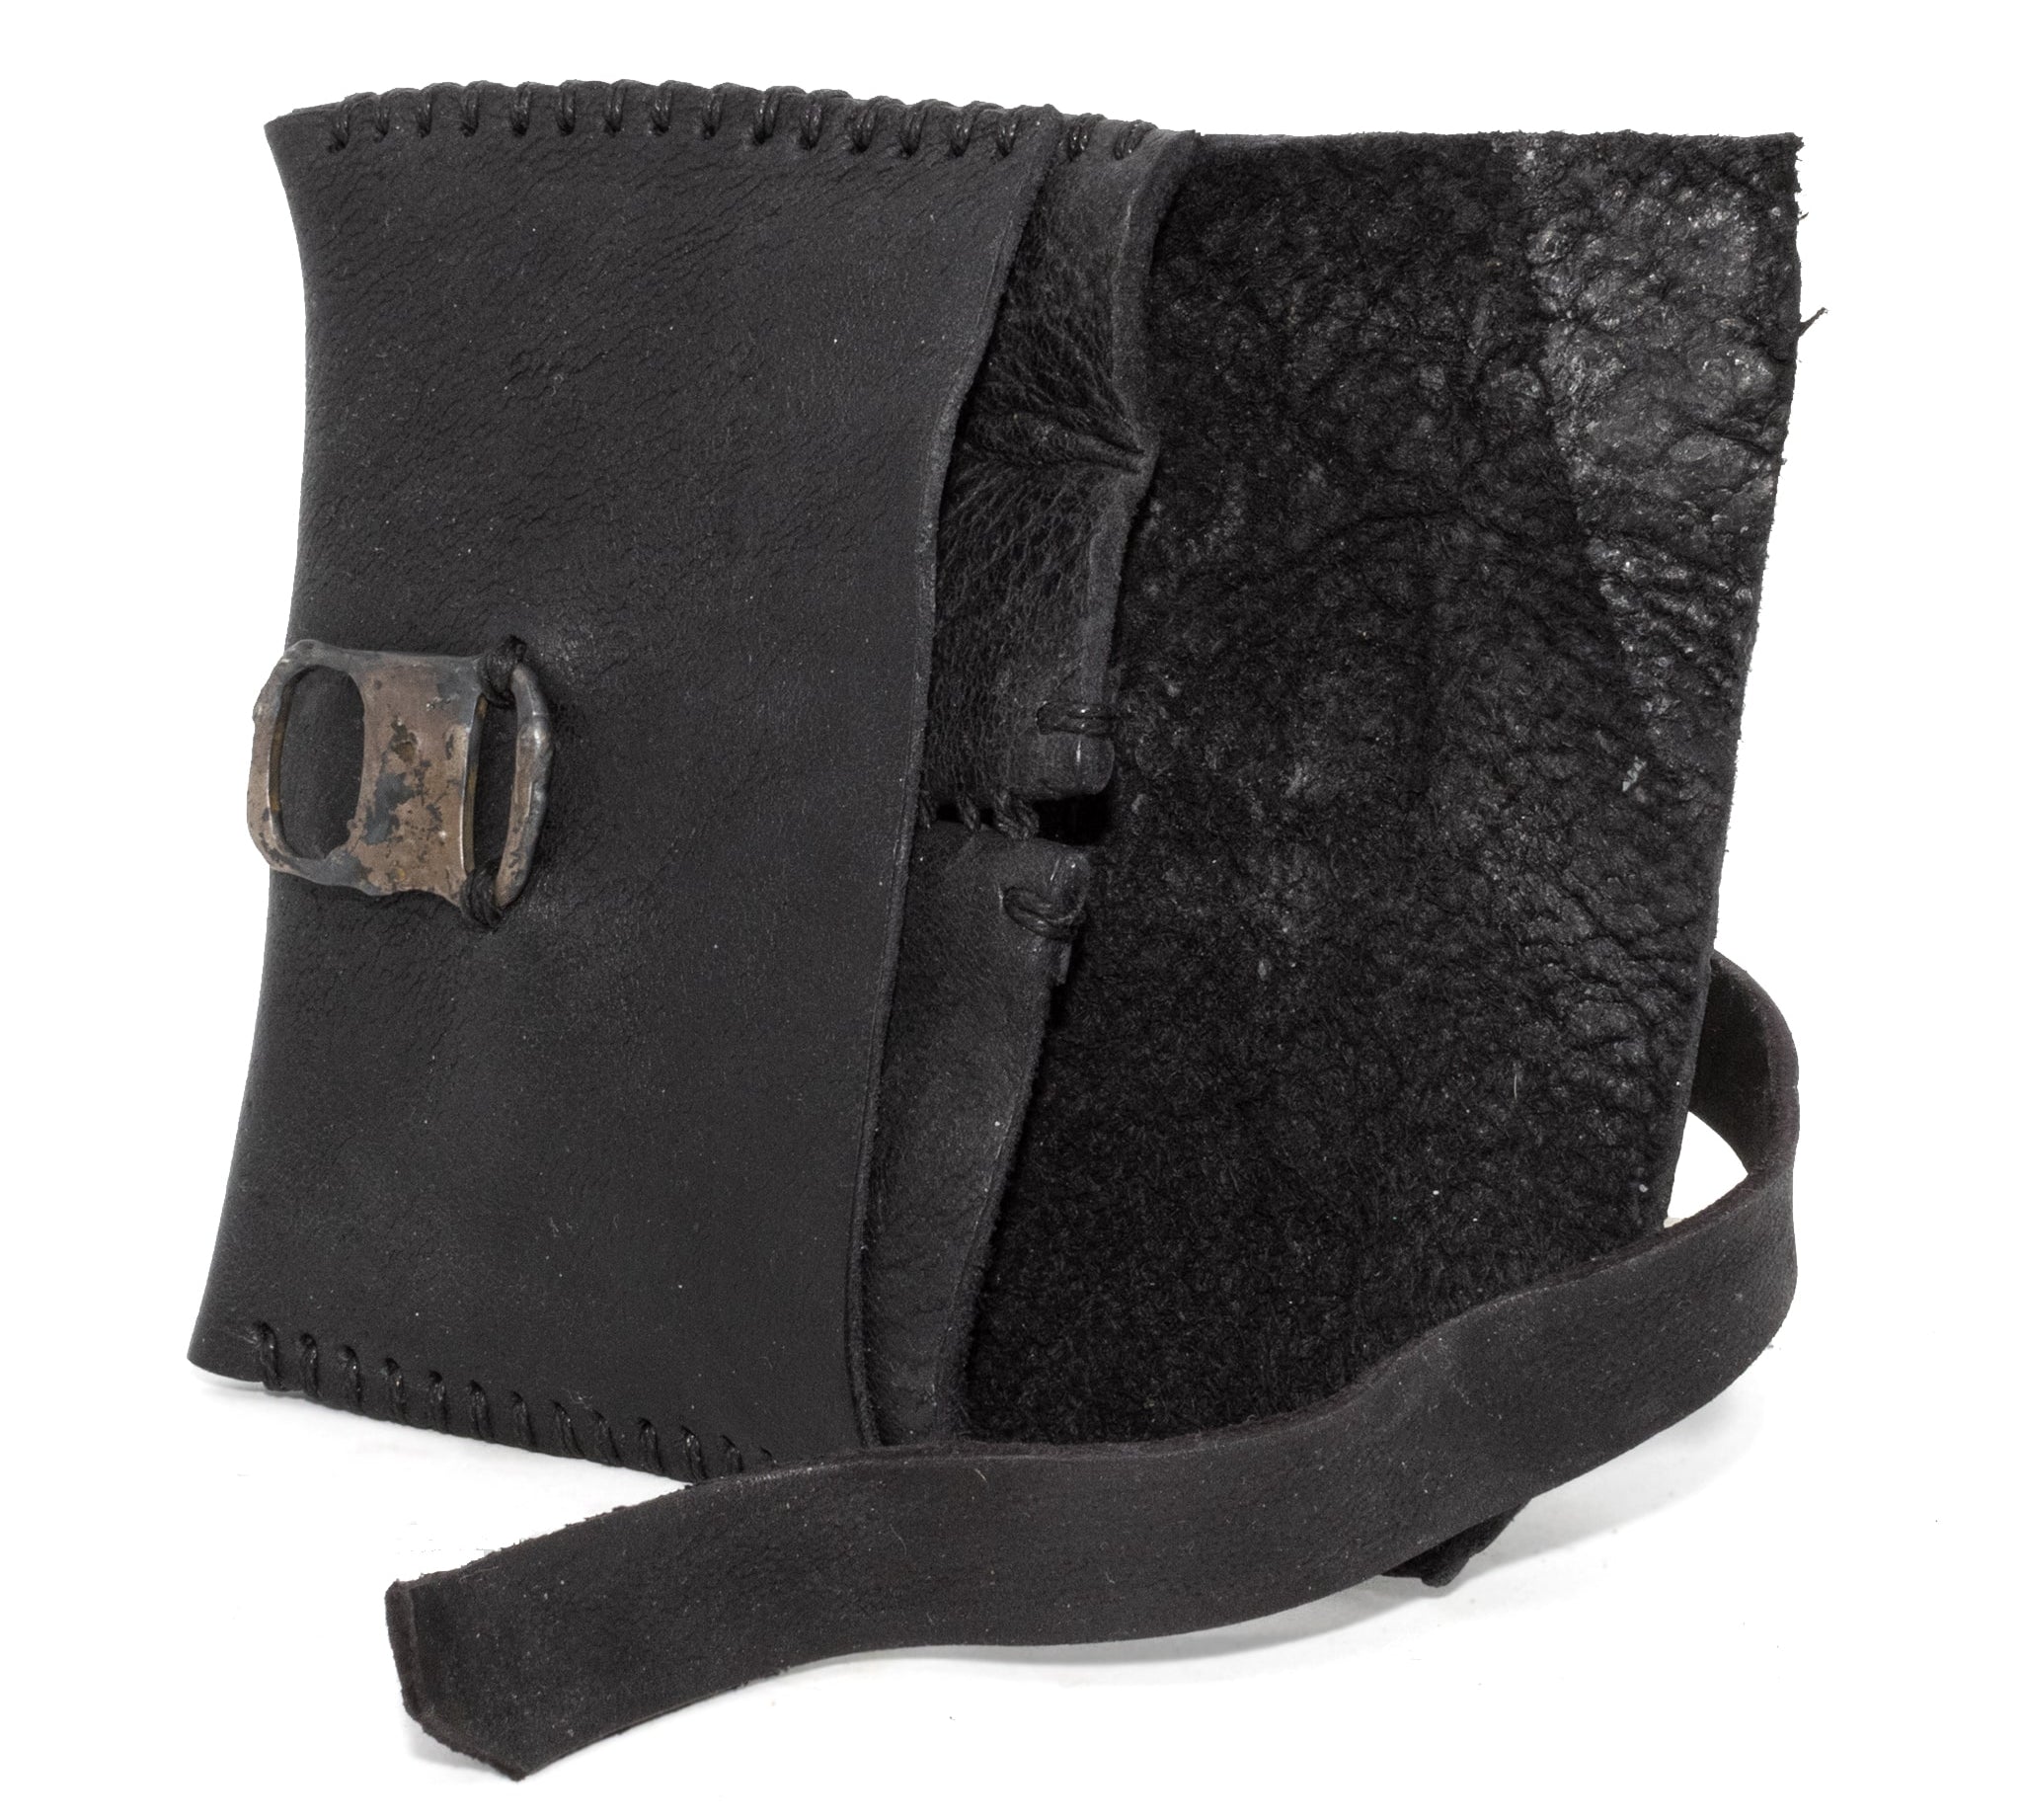 black horse culatta one piece leather card case | atelier skn